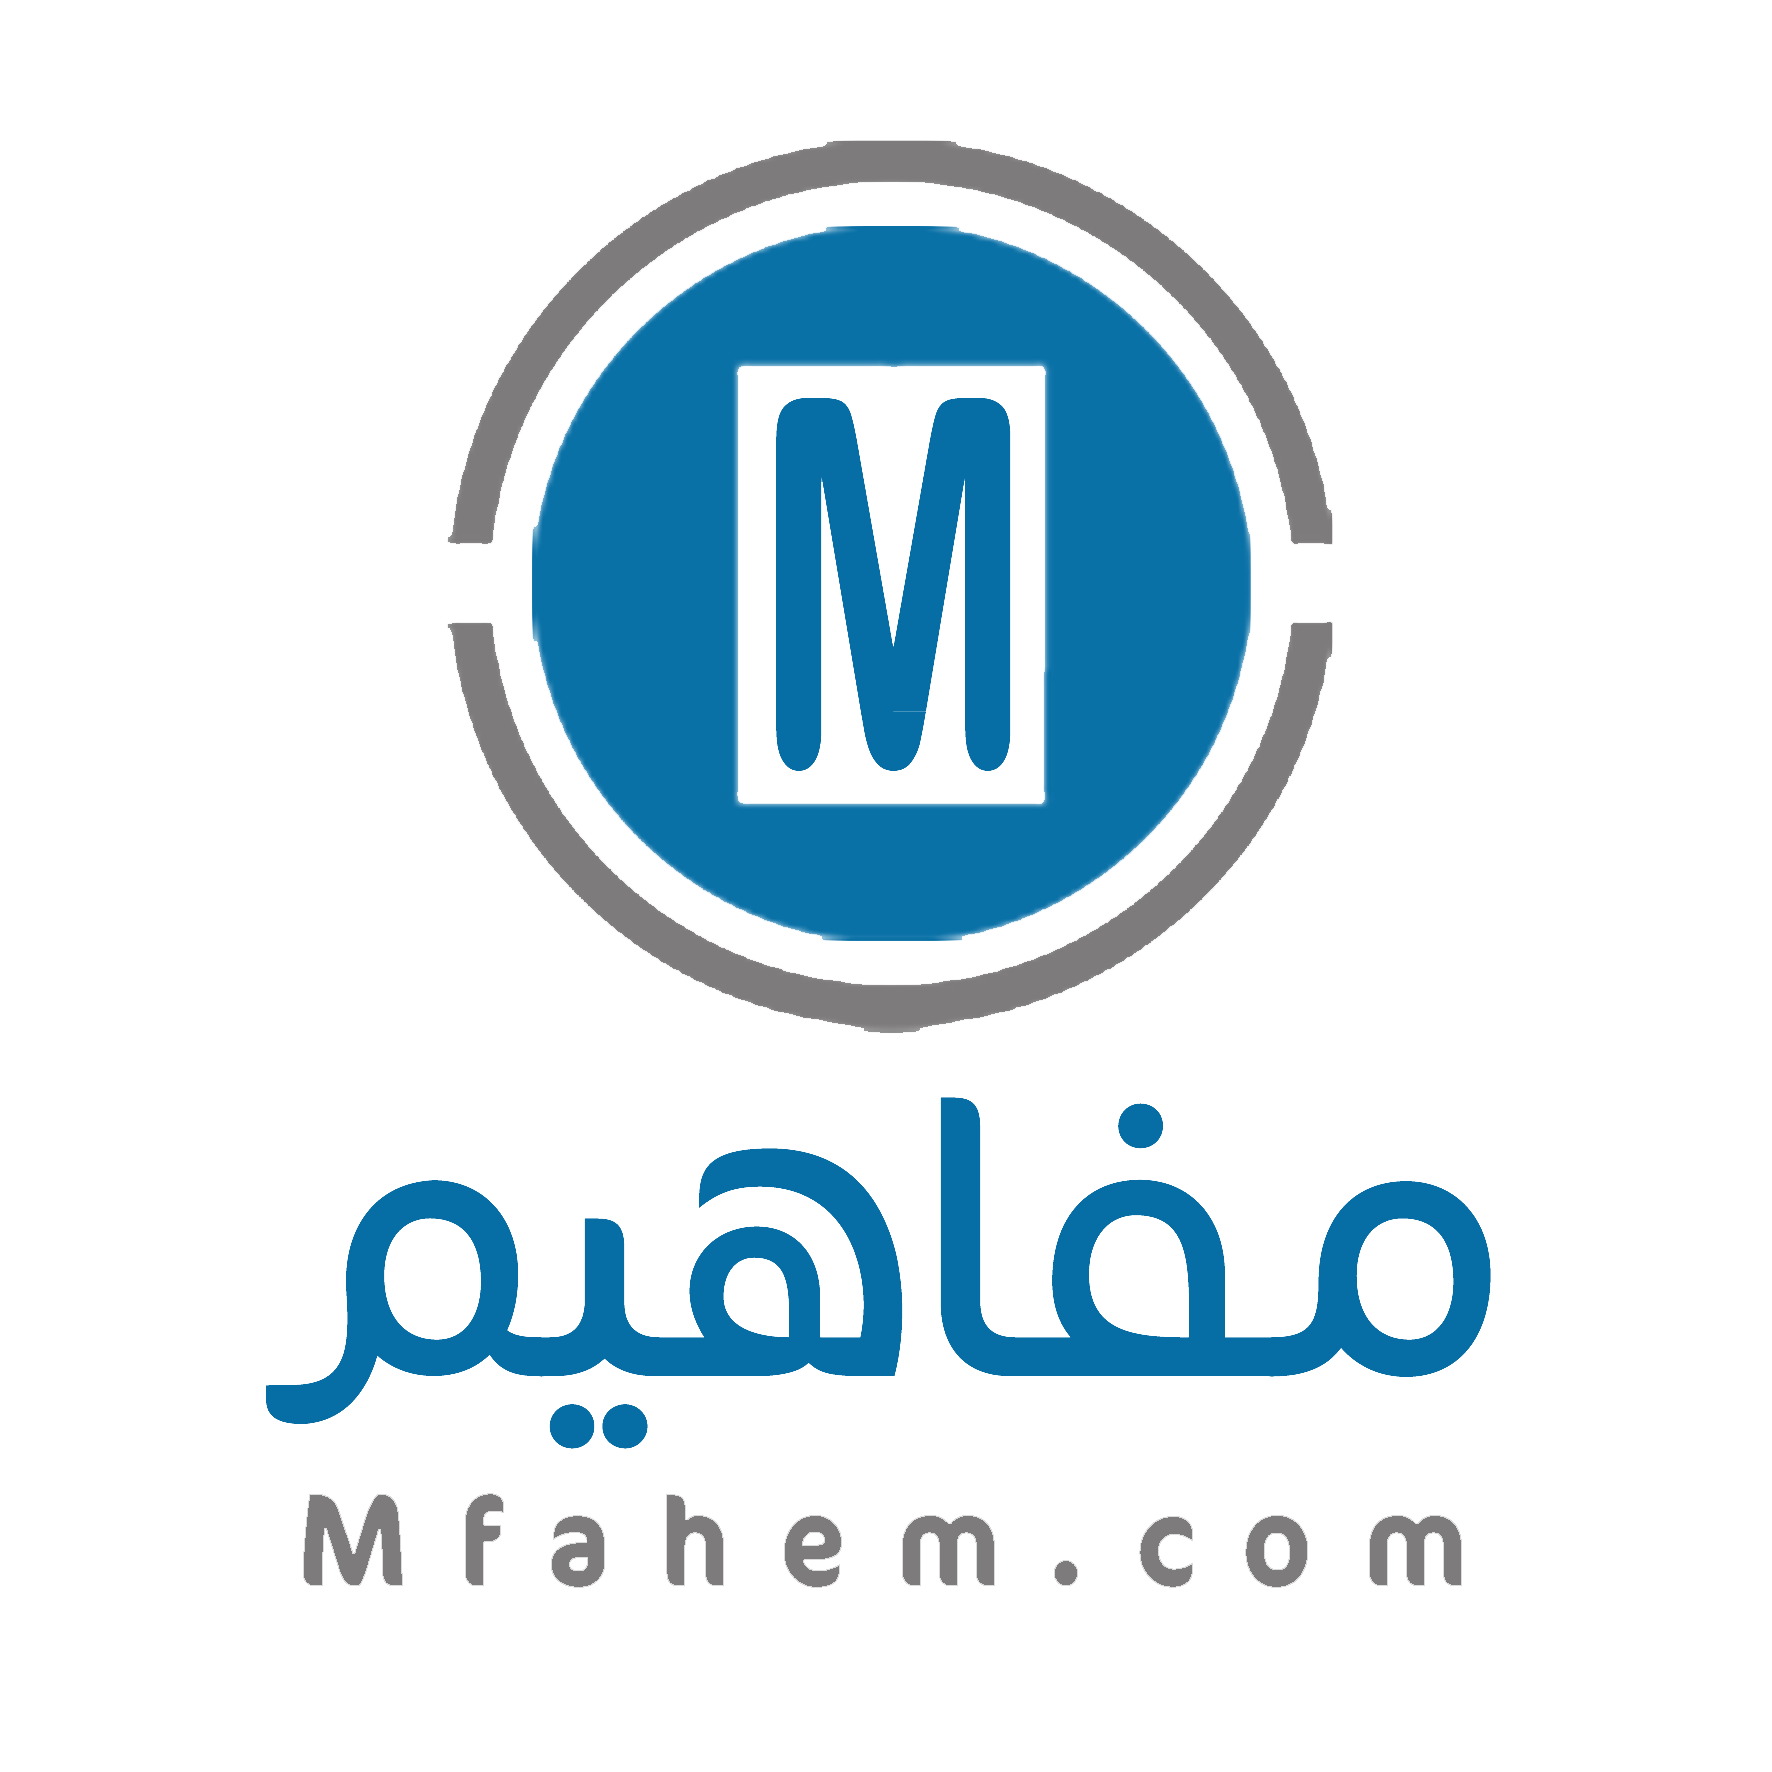 Mfahem